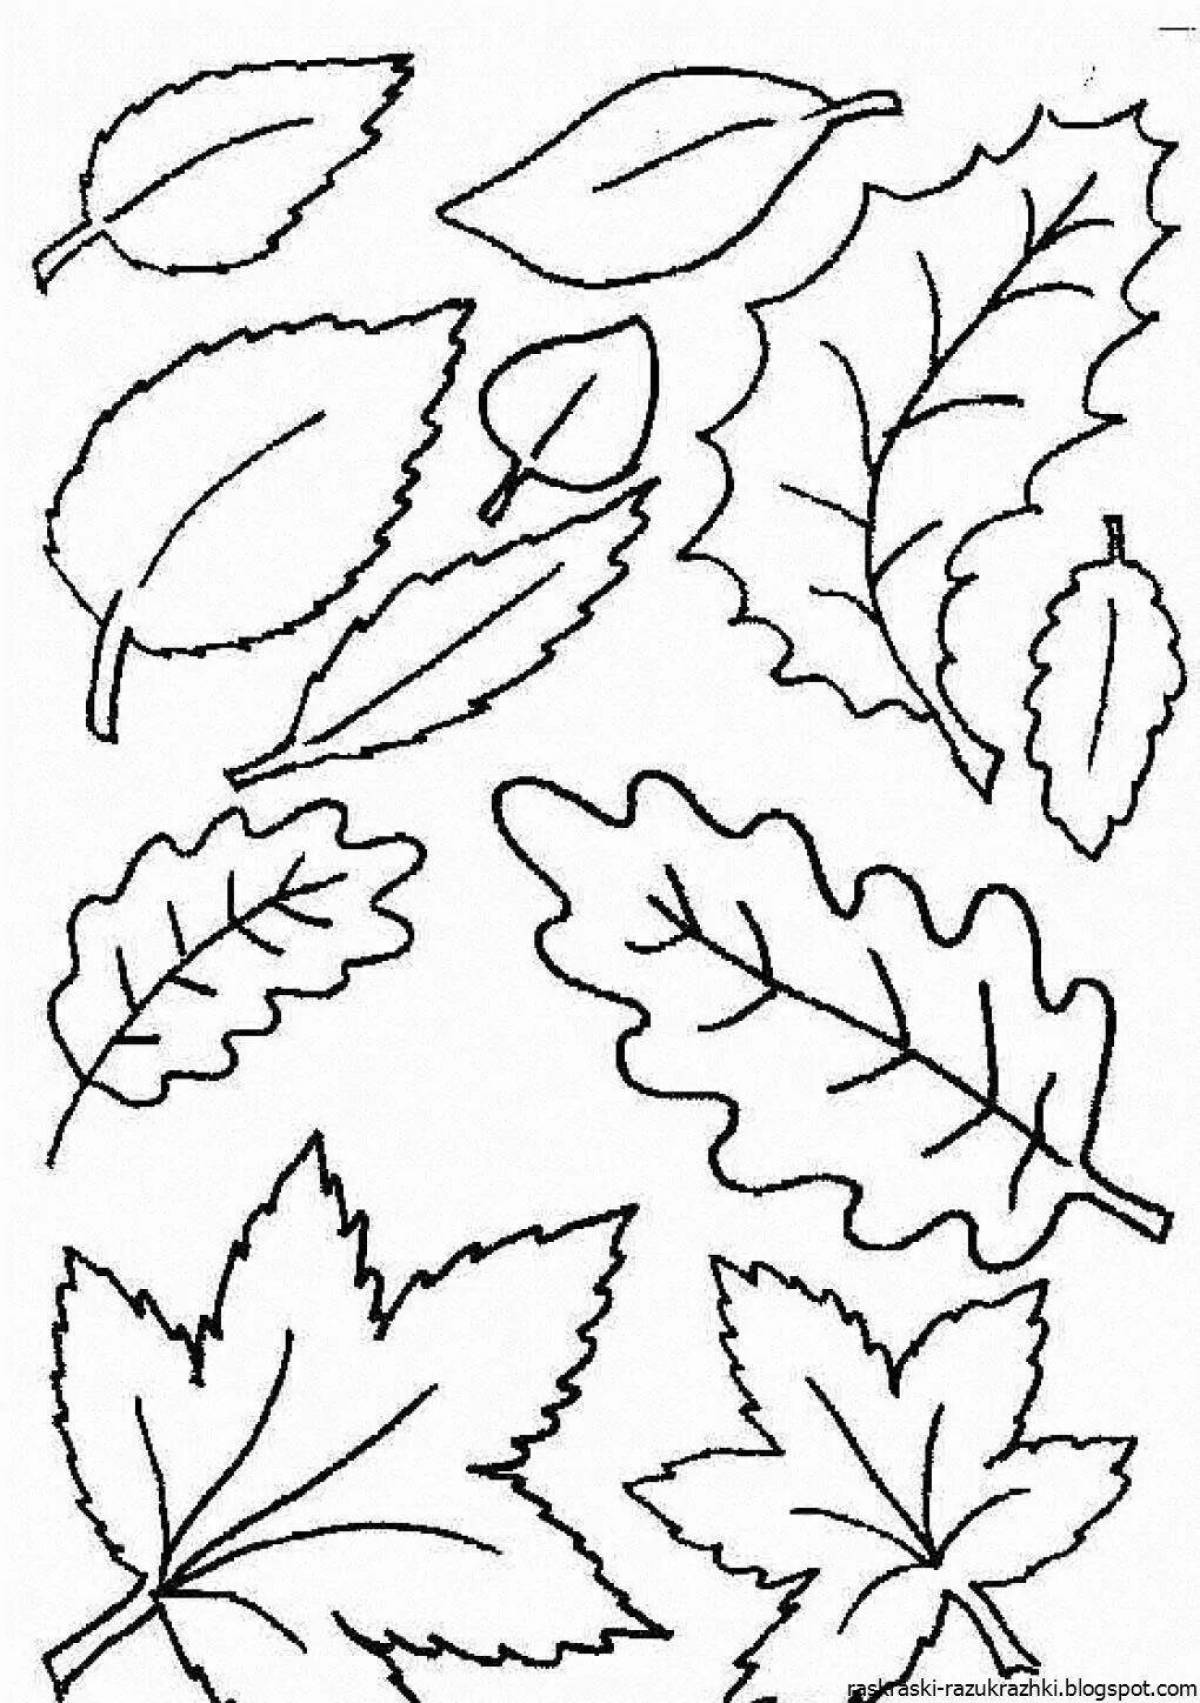 Как можно раскрасить 5 листочков. Листья раскраска. Осенние листочки раскраска. Рамкраскиосении листья. Листья раскраска для детей.